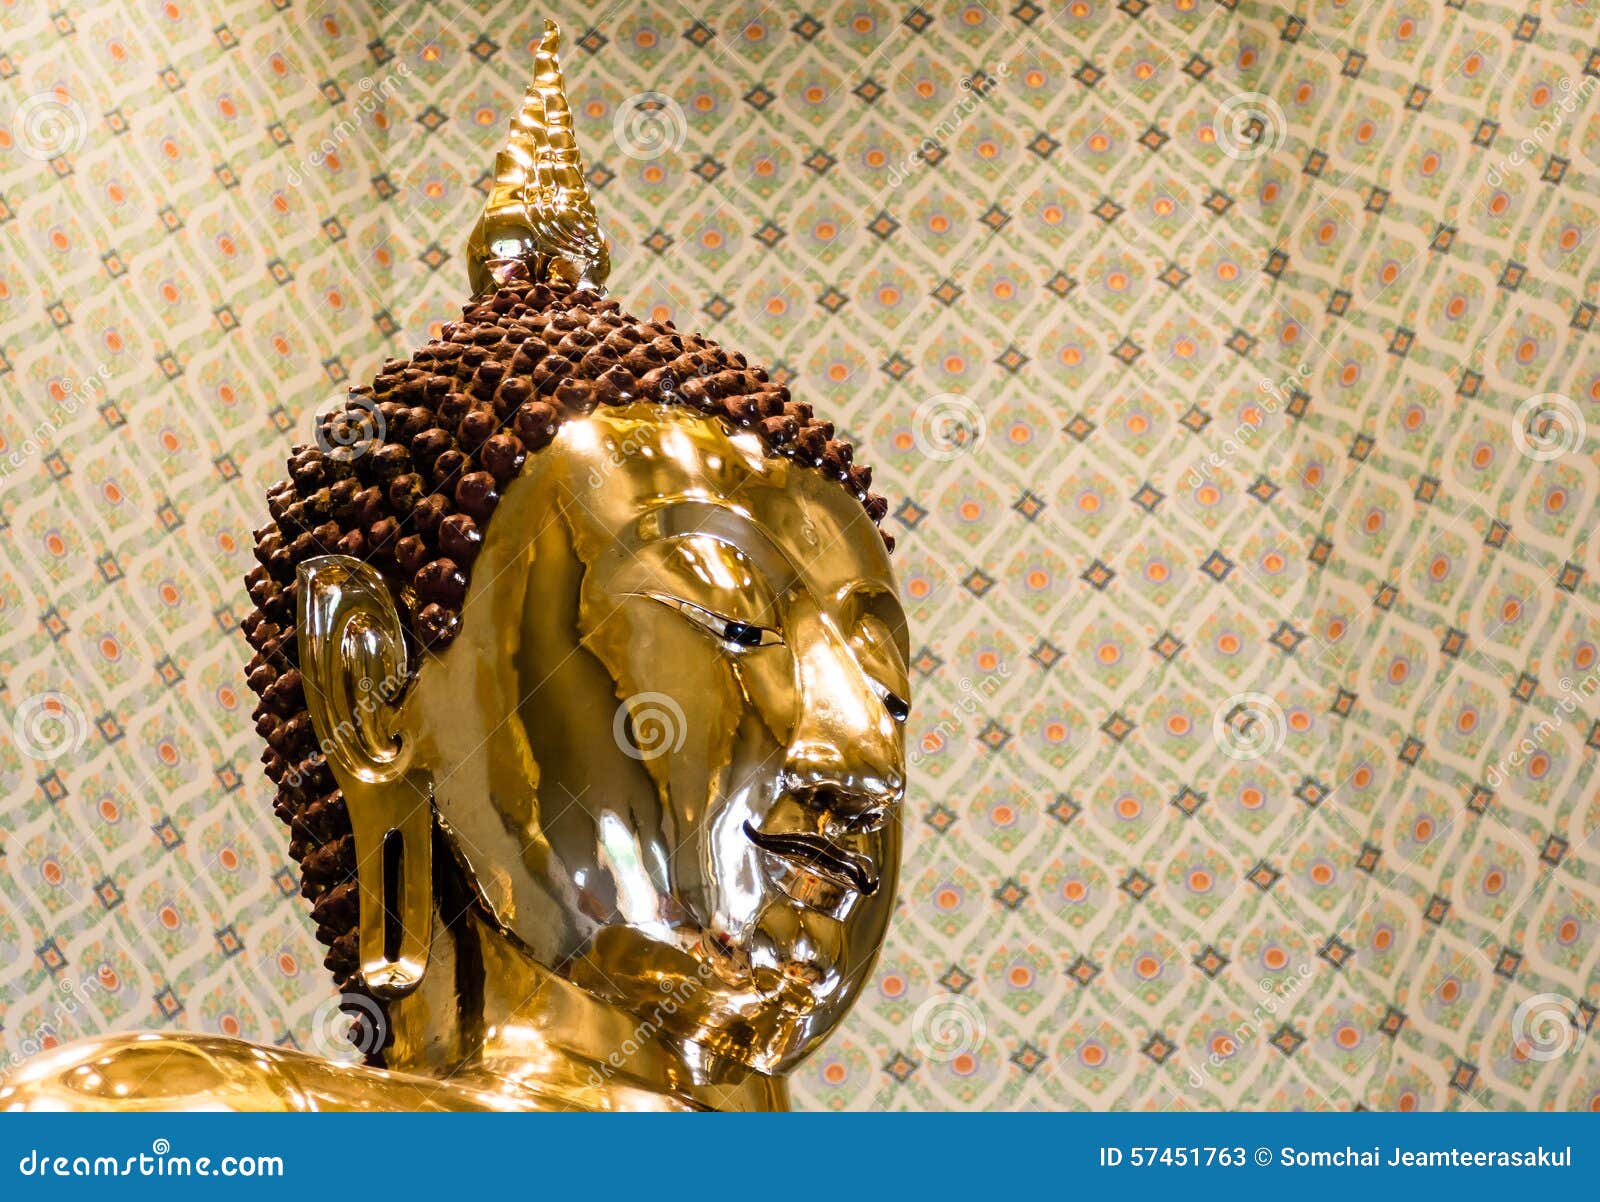 pure gold buddha image at wat traimit, bangkok, thailand